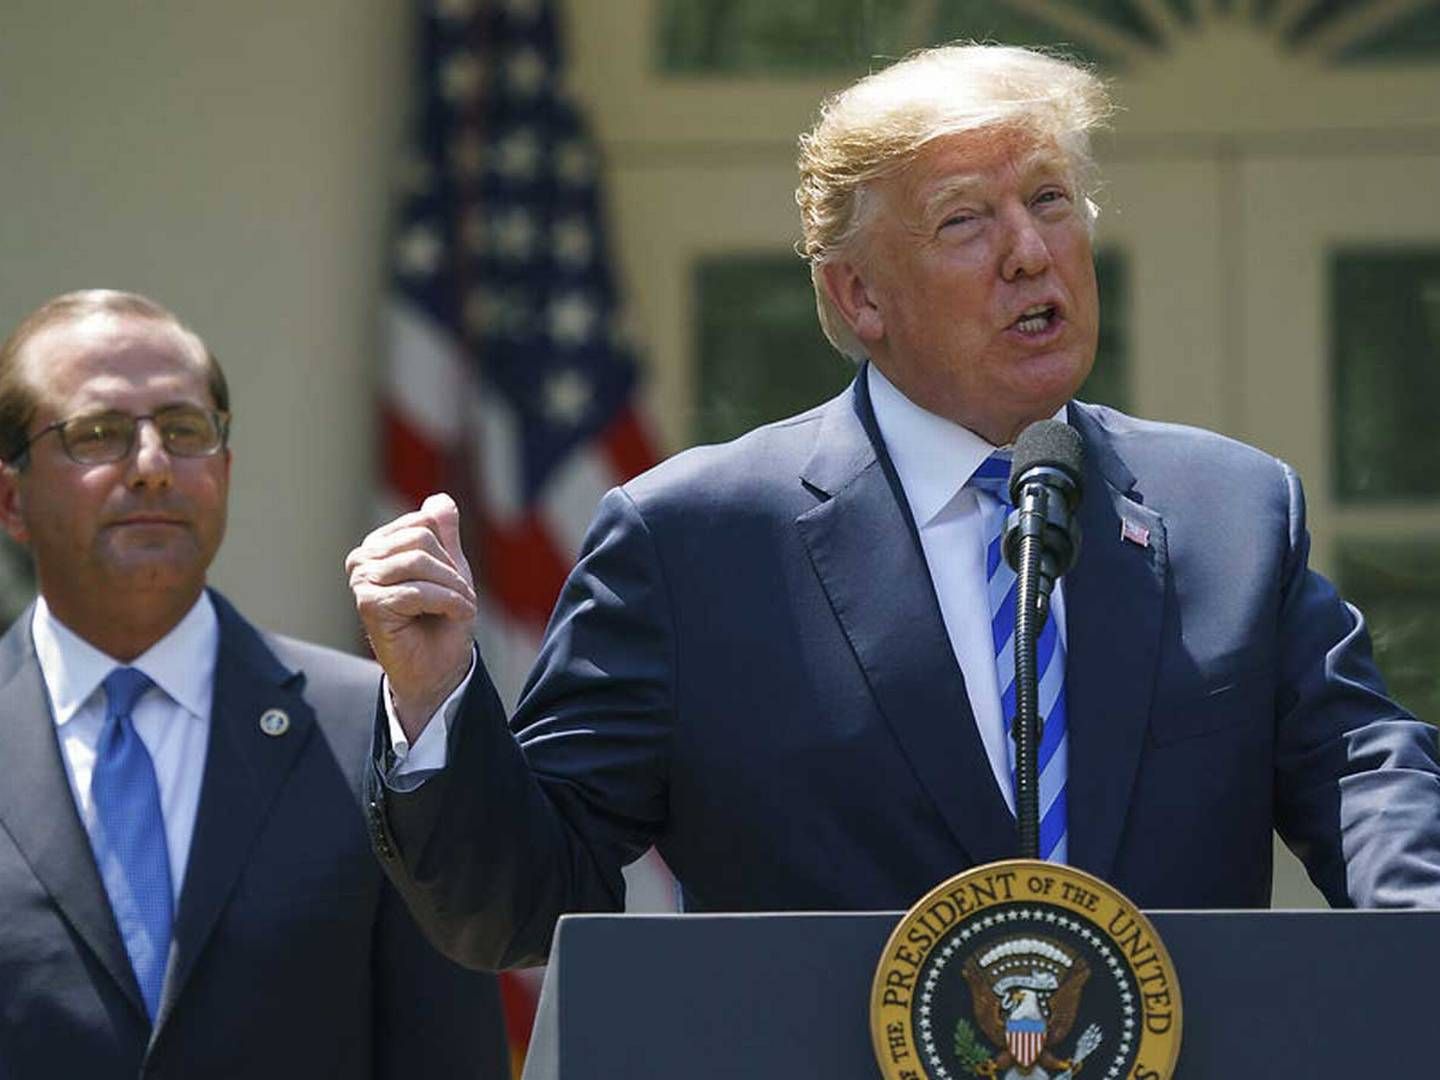 Den amerikanske præsident Donald Trump flankeret af sundhedsminister Alex Azar ved fredagens tale om landets medicinpriser. | Foto: /Ritzau Scanpix/AP/Carolyn Kaster